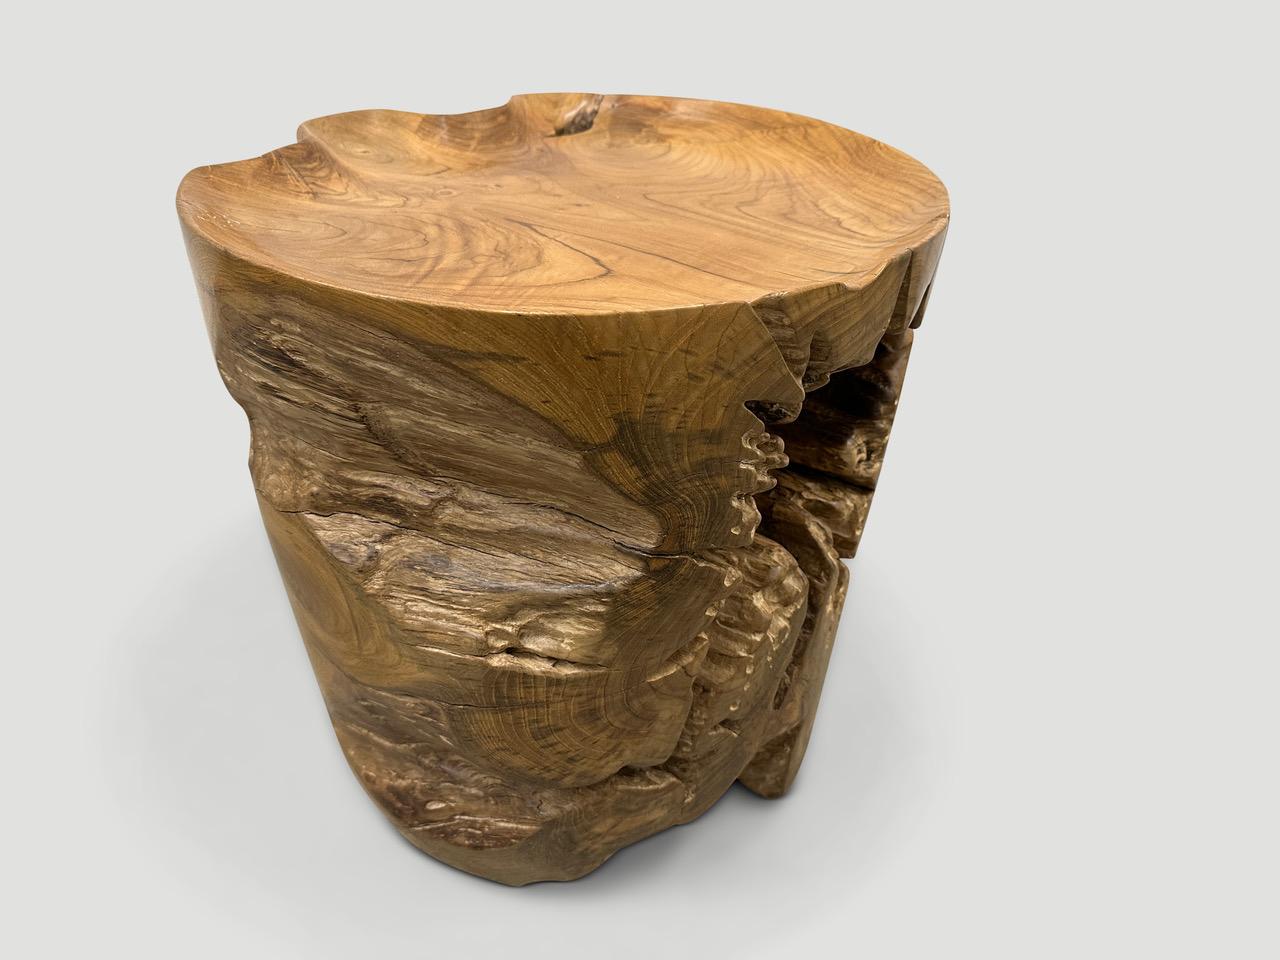 Table d'appoint en bois de teck recyclé de forme naturelle et organique. Nous avons sculpté à la main la partie supérieure en forme de plateau et poli le teck vieilli avec une huile naturelle révélant le magnifique grain du bois. Les parties